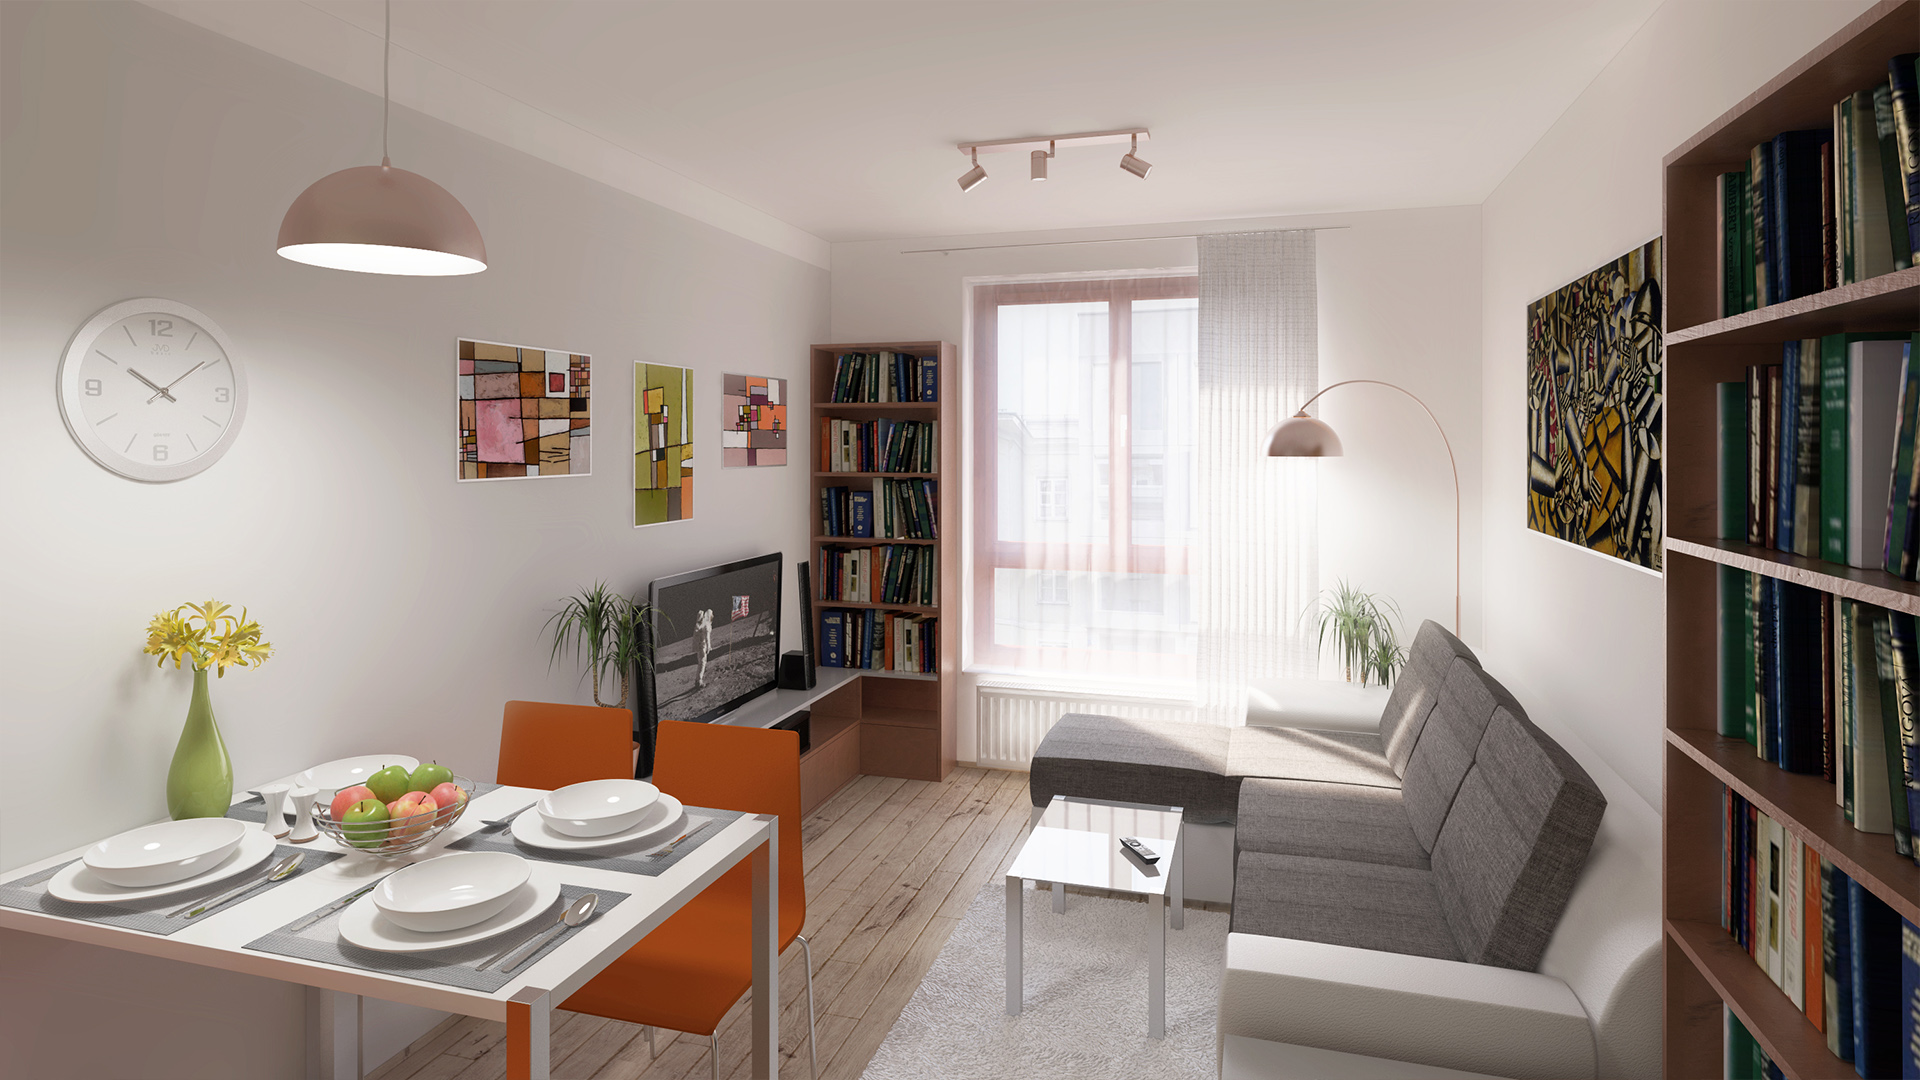 Rekonstrukce bytu 2 + kk v Hostivici. V obývacím pokoji je umístěna velká šedobílá sedačka, která se dá příležitostně rozložit. Světle šedostříbrná výmalba se objevuje na protější